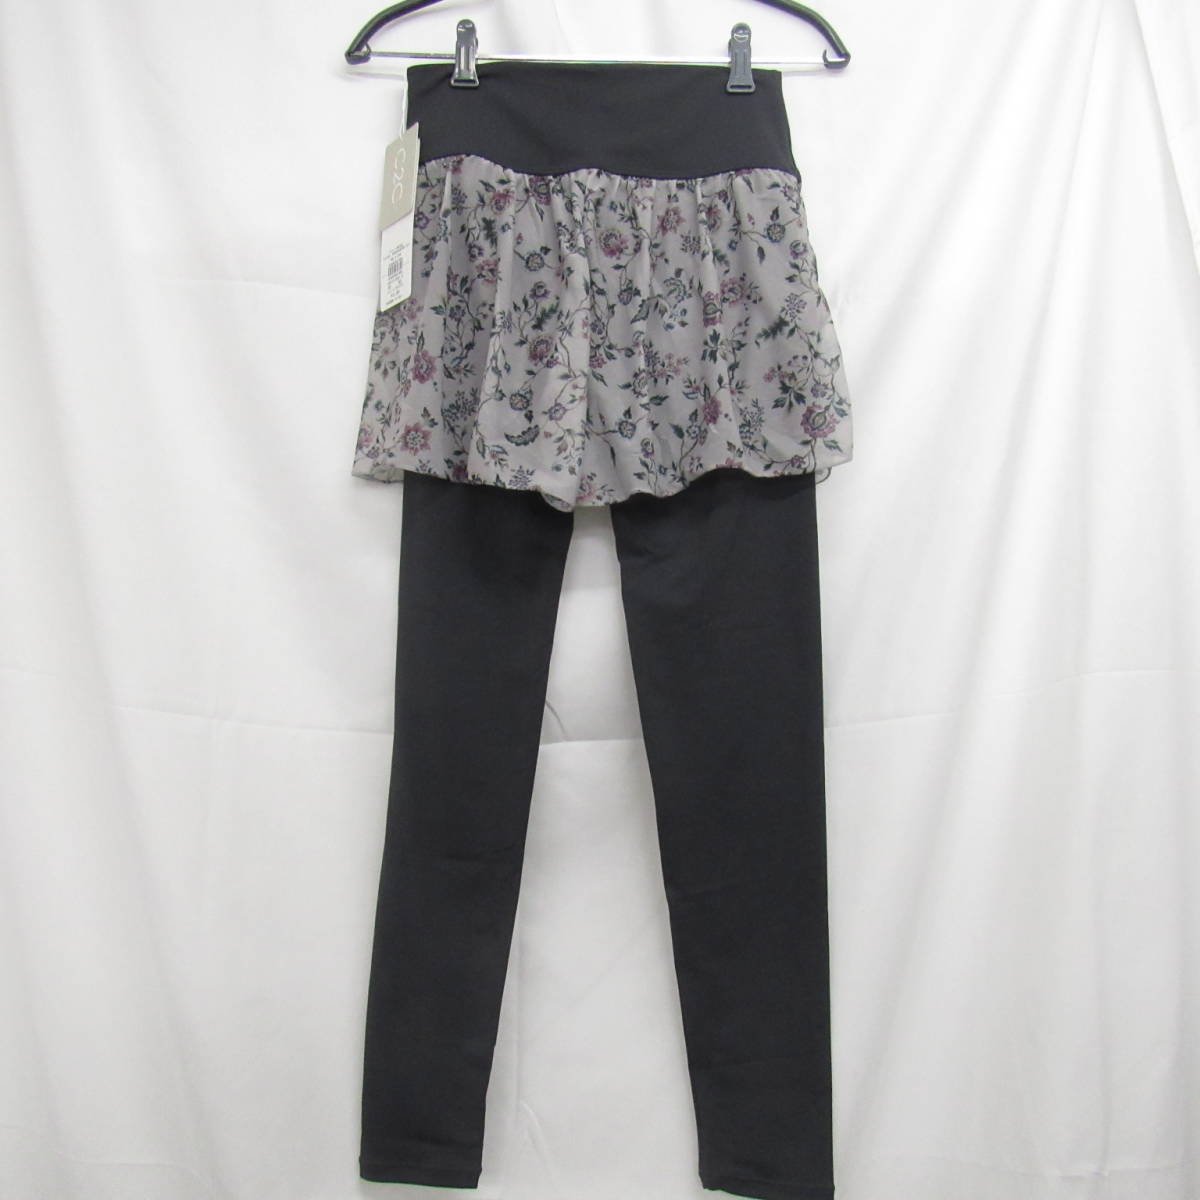 87-00271 [ outlet ] tea cot short pants attaching leggings yoga ballet Dance waist rubber lady's M size gray floral print 